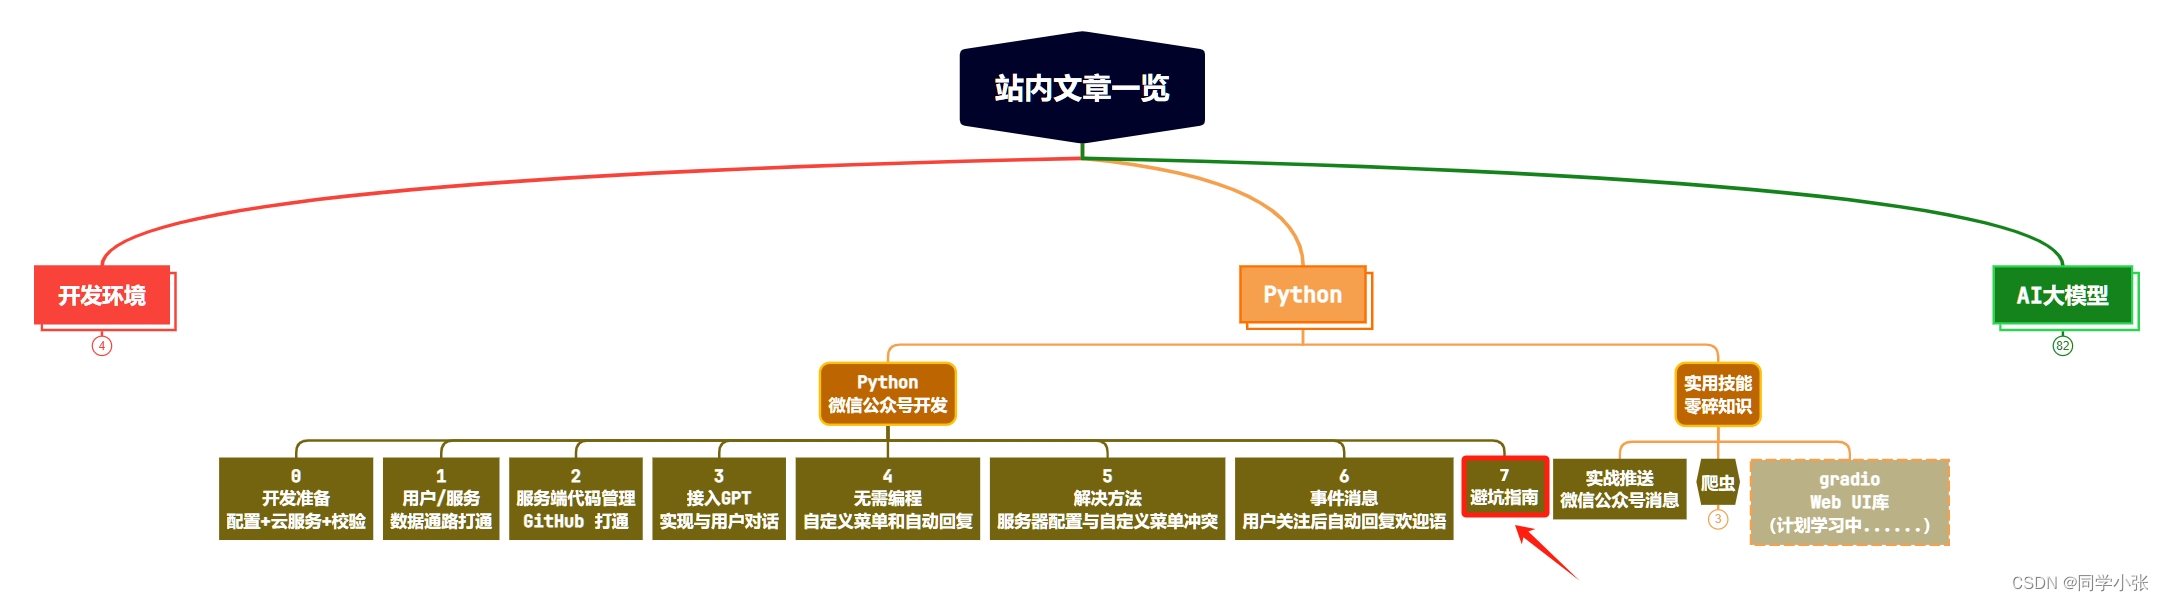 【Python + 微信】微信公众号开发避坑指南